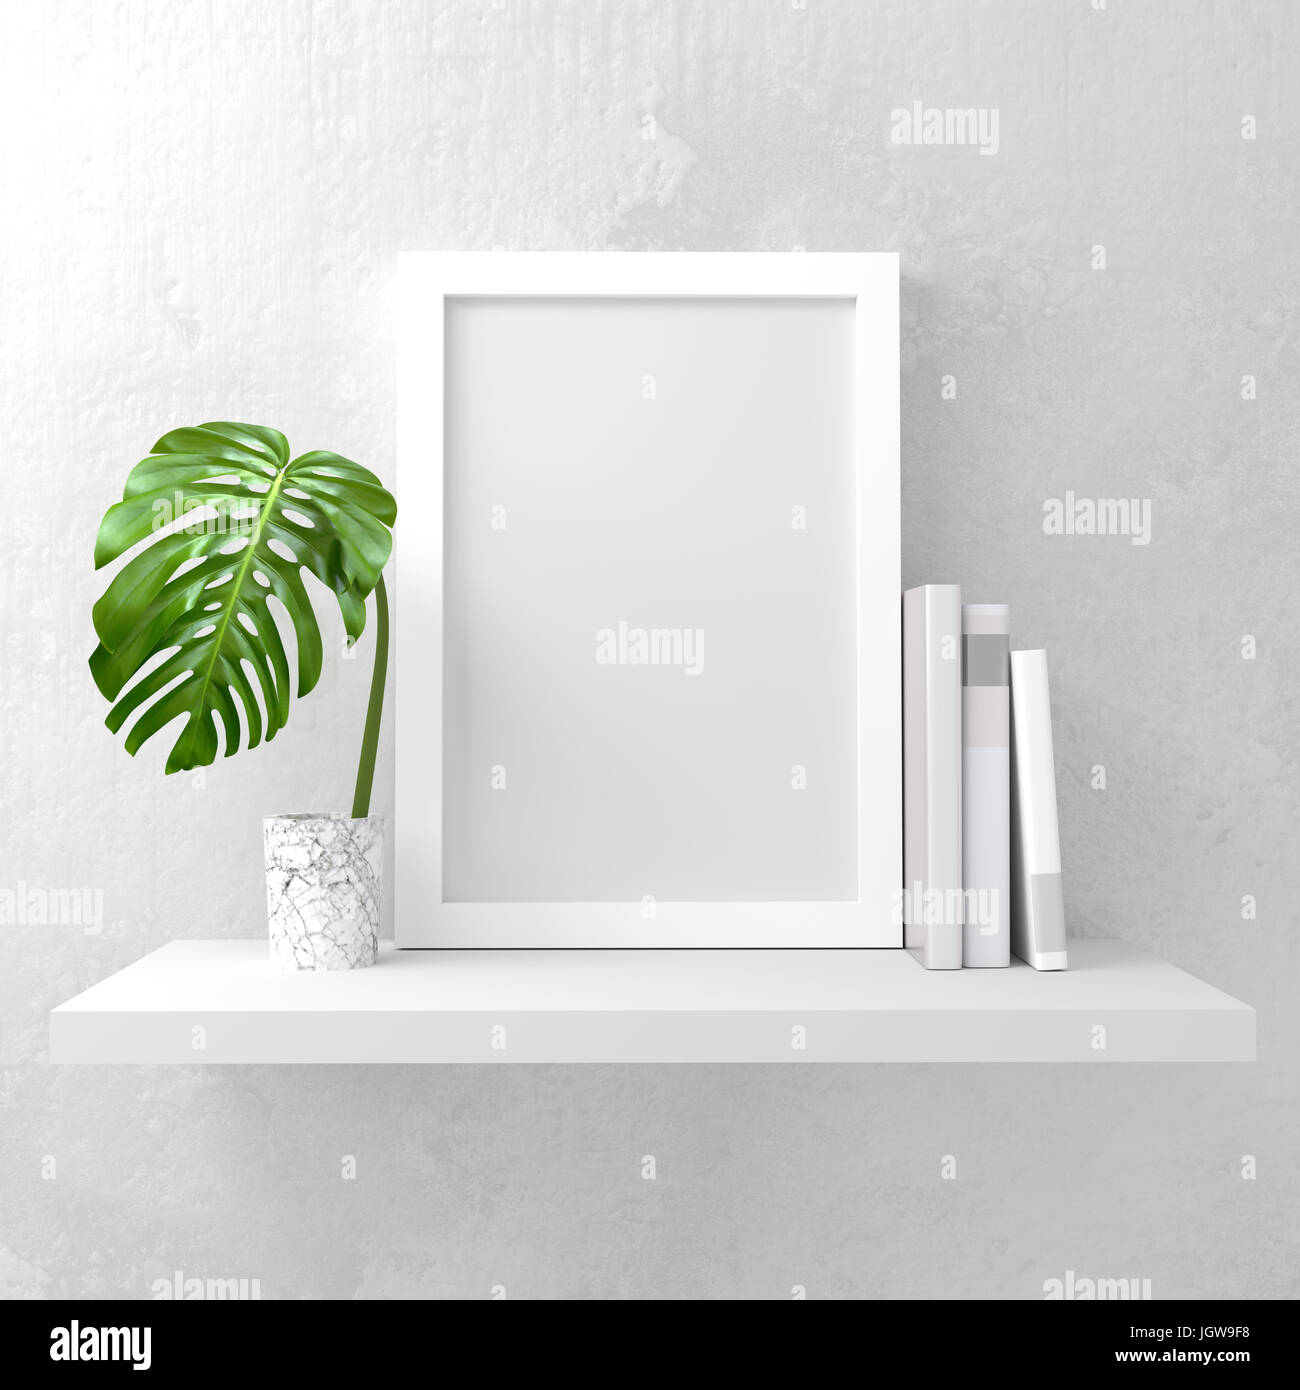 Una cornice fotografica mock up su un ripiano bianco. Pulire e dal design minimale. 3D render illustrazione Foto Stock